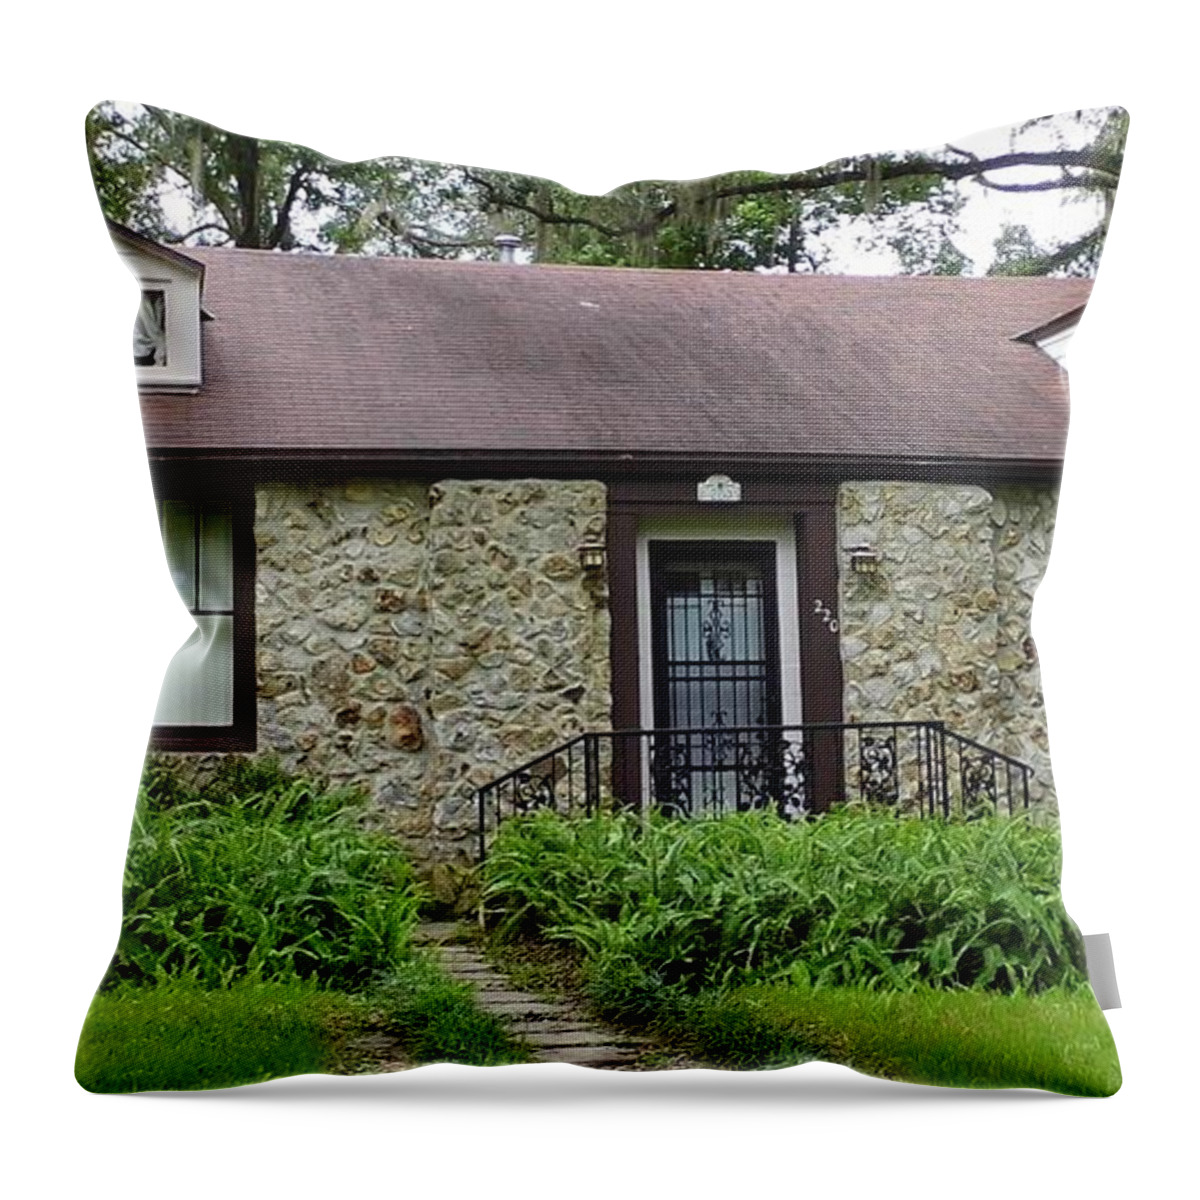 Chert Throw Pillow featuring the photograph Chert Cottage by D Hackett